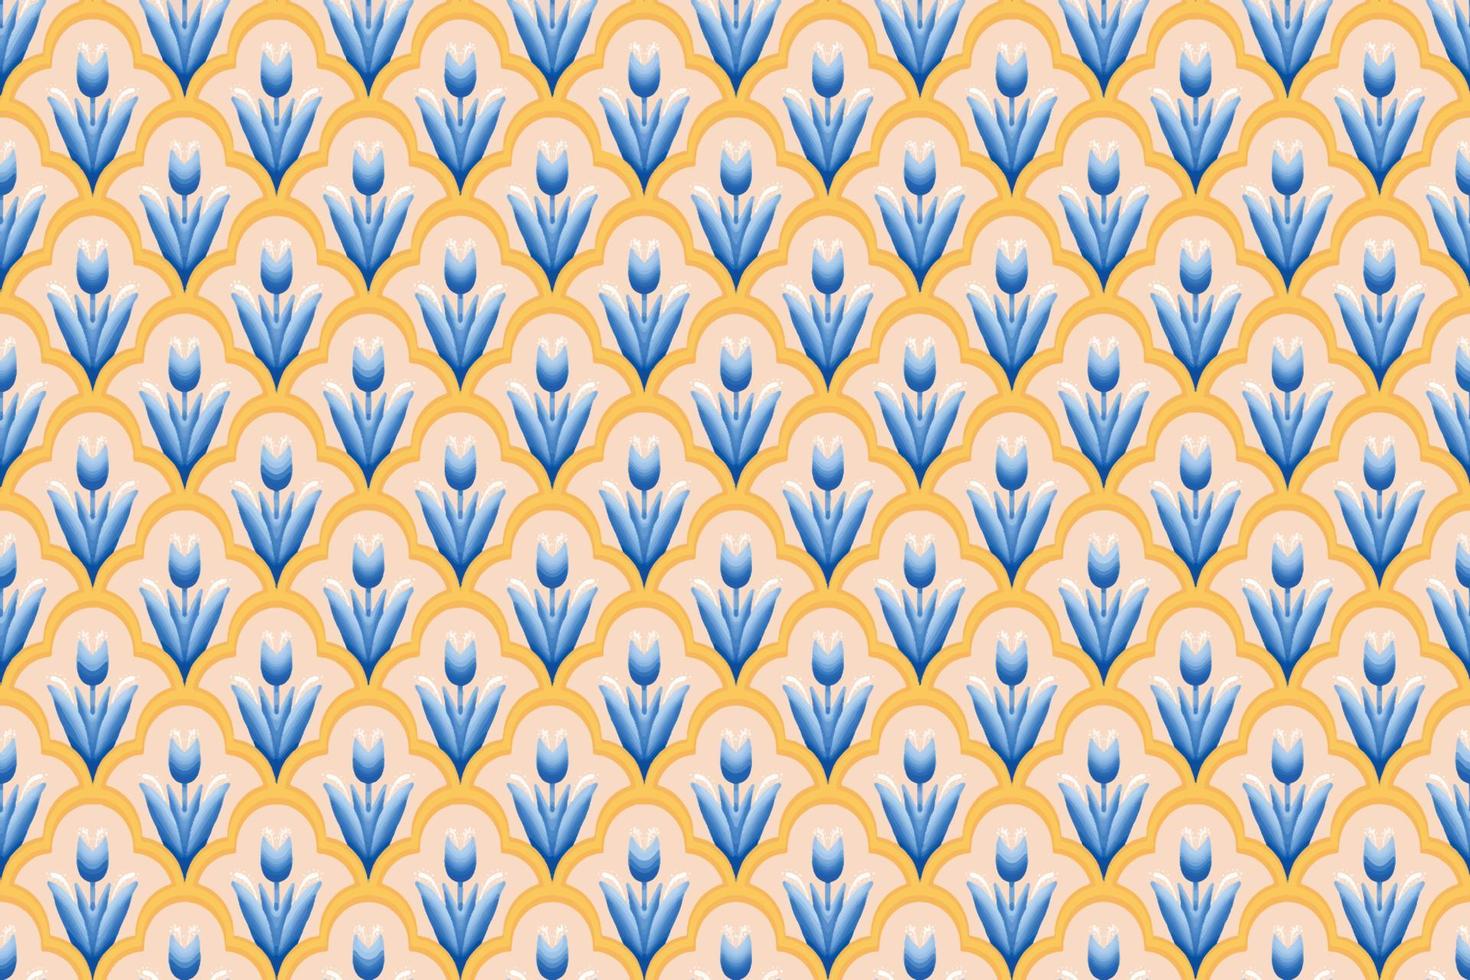 blauwe bloem op ivoor, wit, geel geometrische etnische Oosterse patroon traditioneel ontwerp voor achtergrond,tapijt,behang,kleding,inwikkeling,batik,stof, vector illustratie borduurstijl